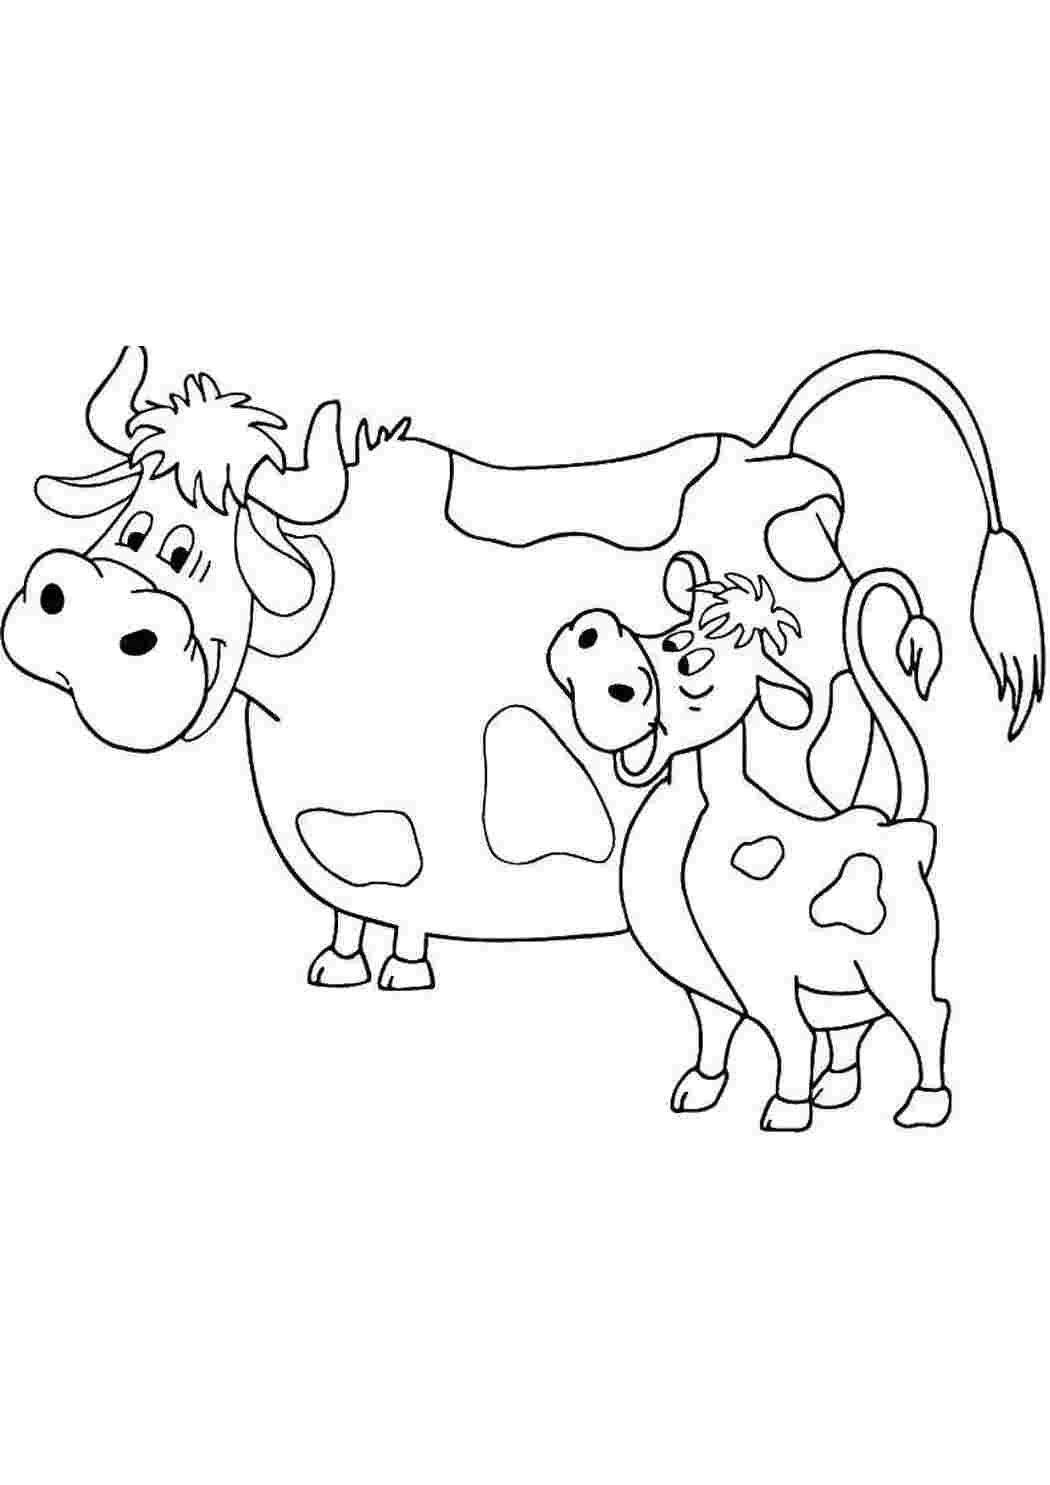 Раскраски Корова мурка, и теленок гаврюша раскраски простоквашино корова мурка, теленок гаврюша